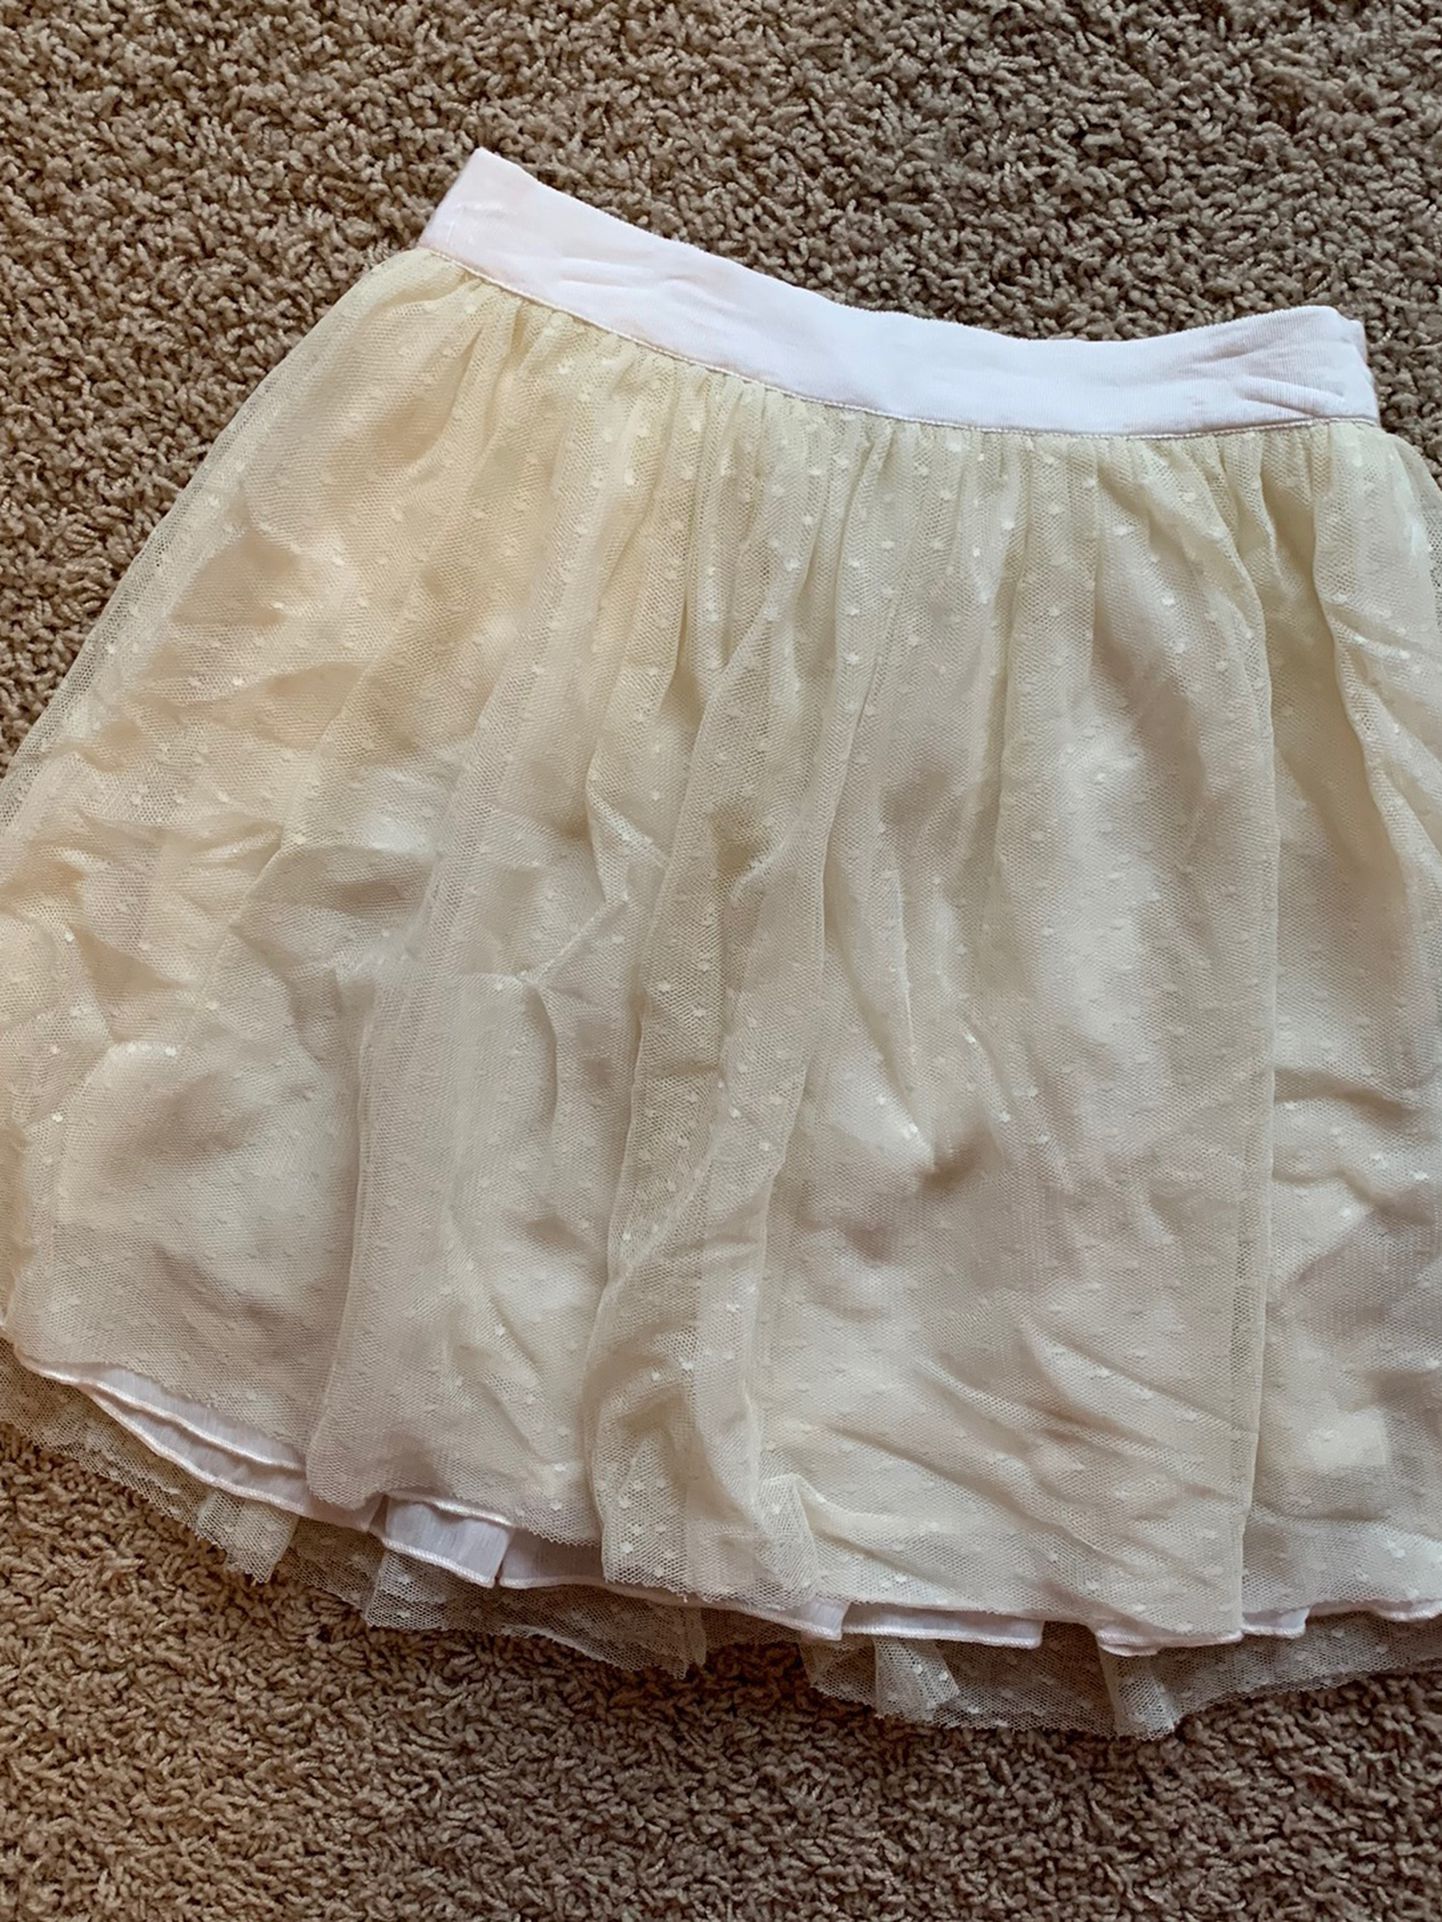 Abercrombie Tulle Skirt